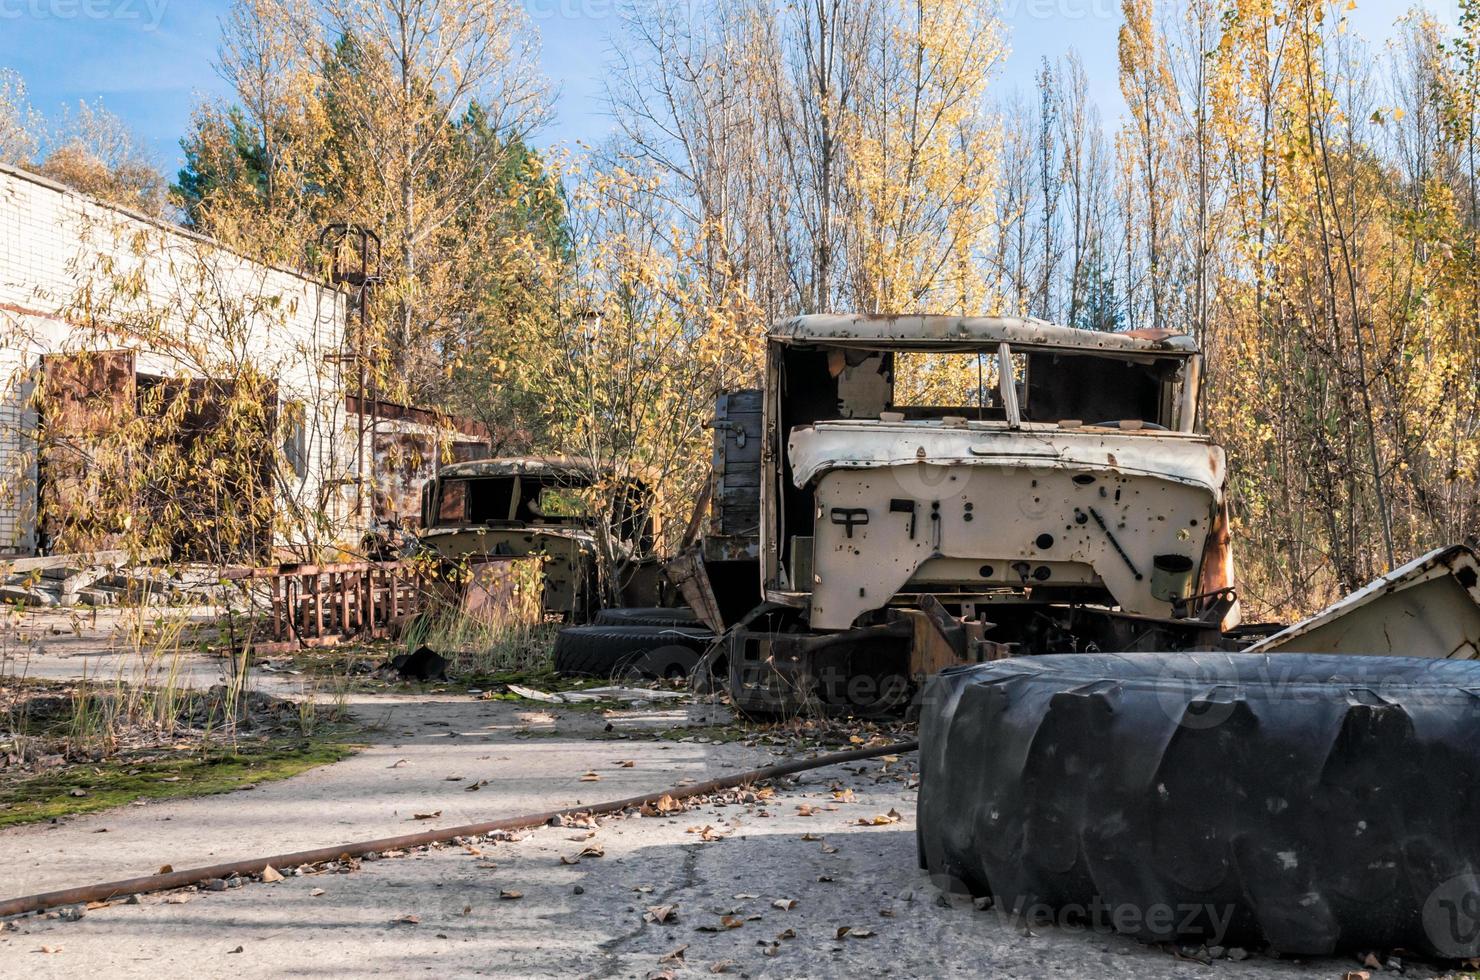 pripyat, ucraina, 2021 - vecchio veicolo distrutto abbandonato a chernobyl foto